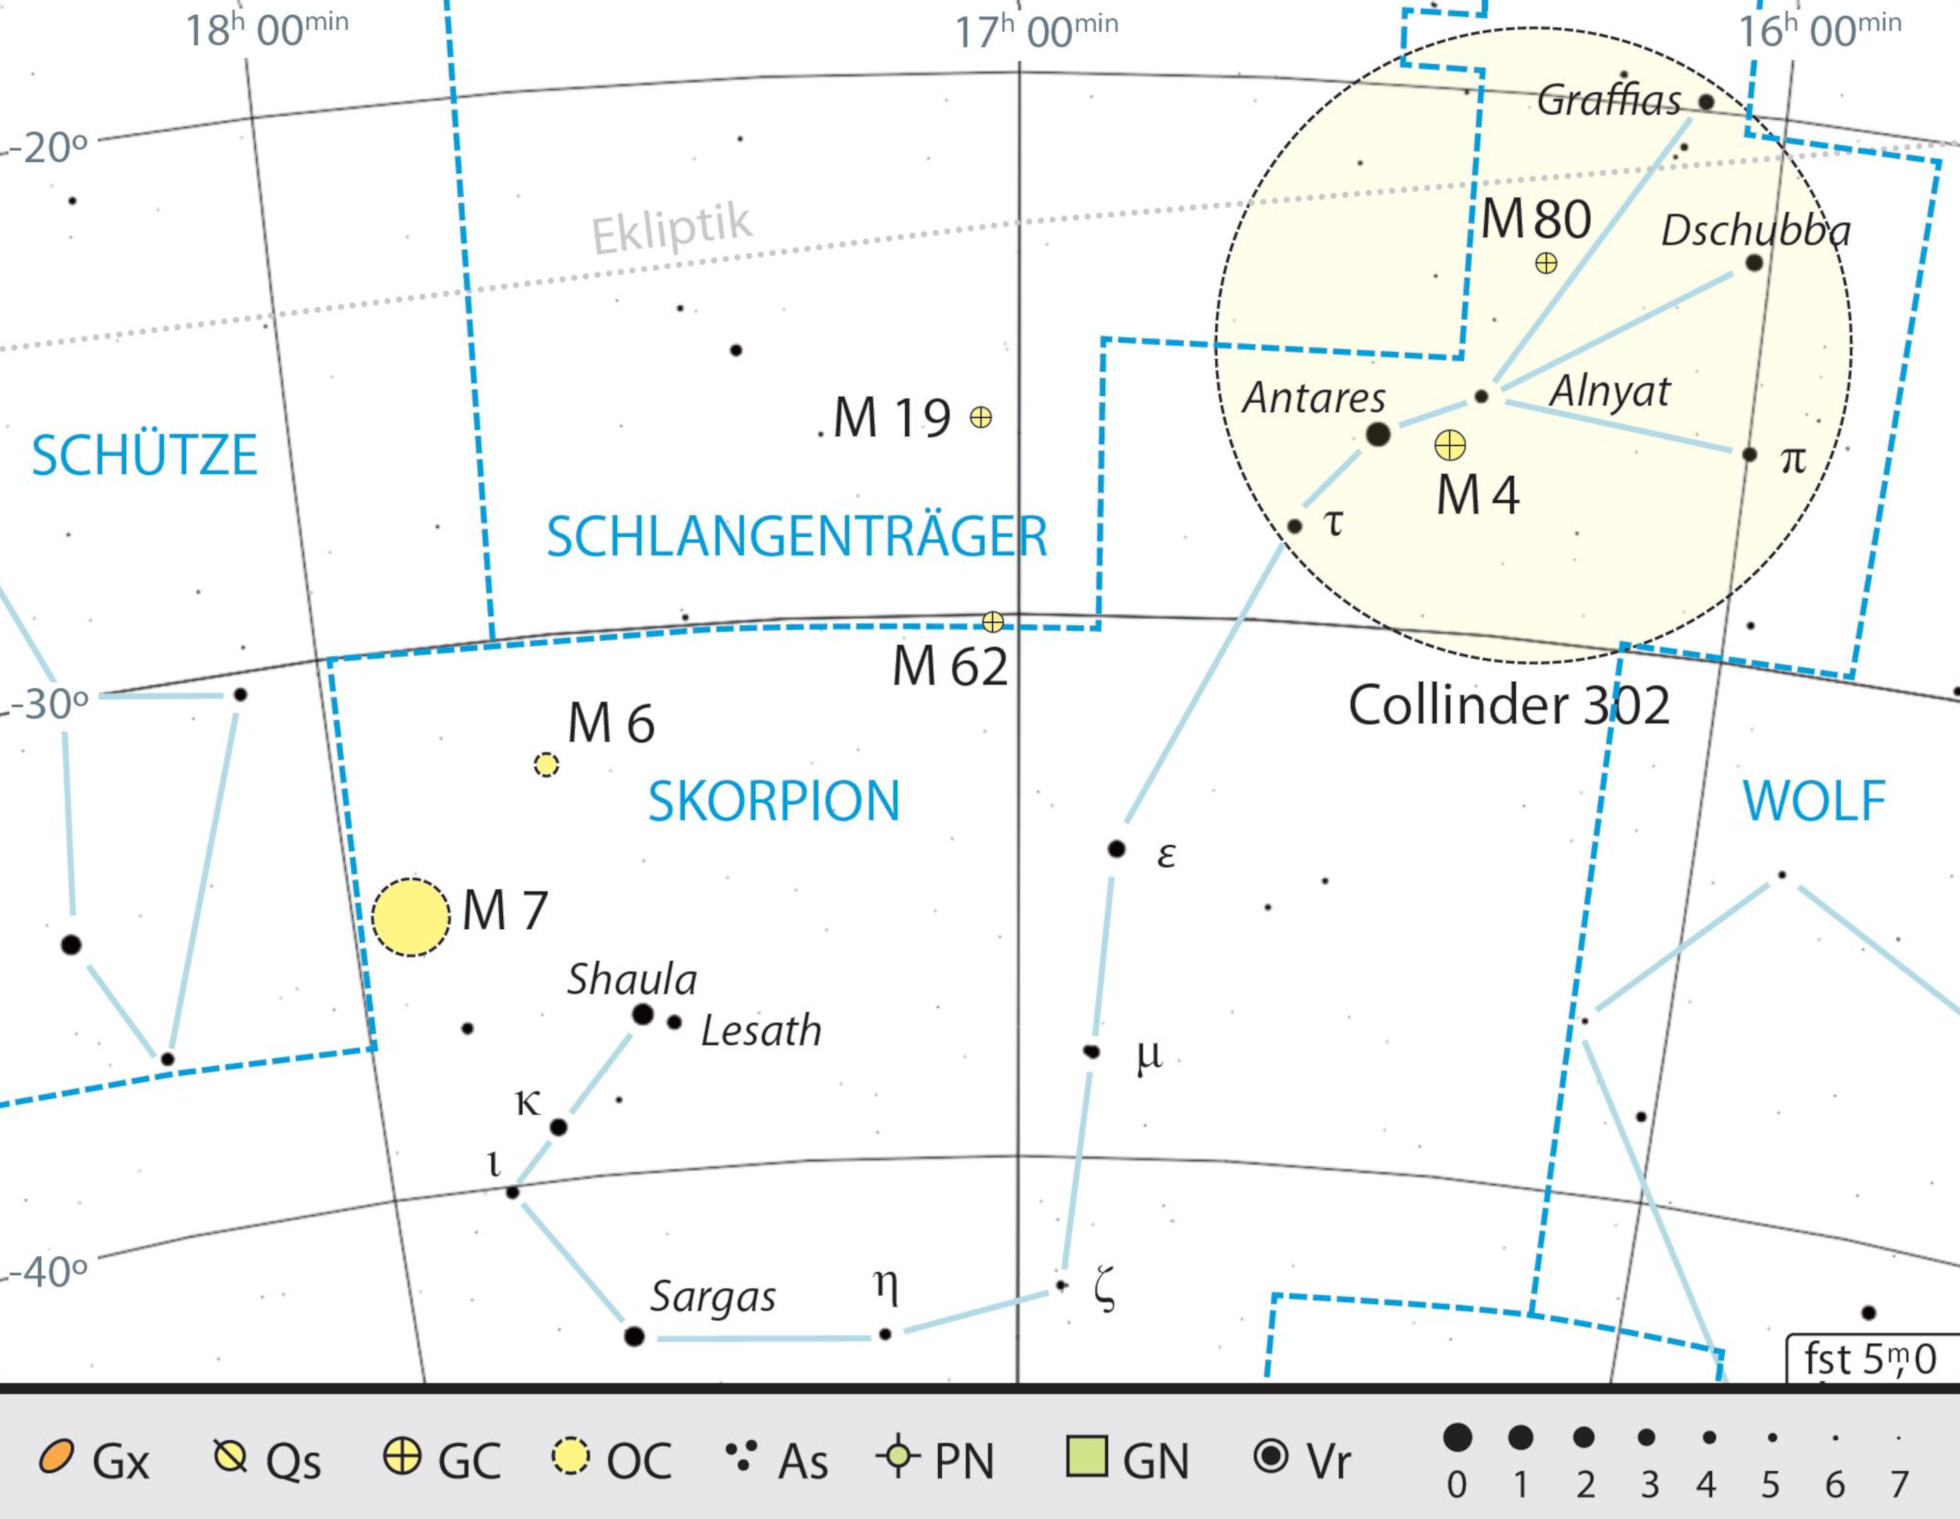 Mapa geral da constelação Escorpião com as recomendações de observação, incl. o aglomerado móvel Antares assinalado a vermelho. Kai v. Schauroth 